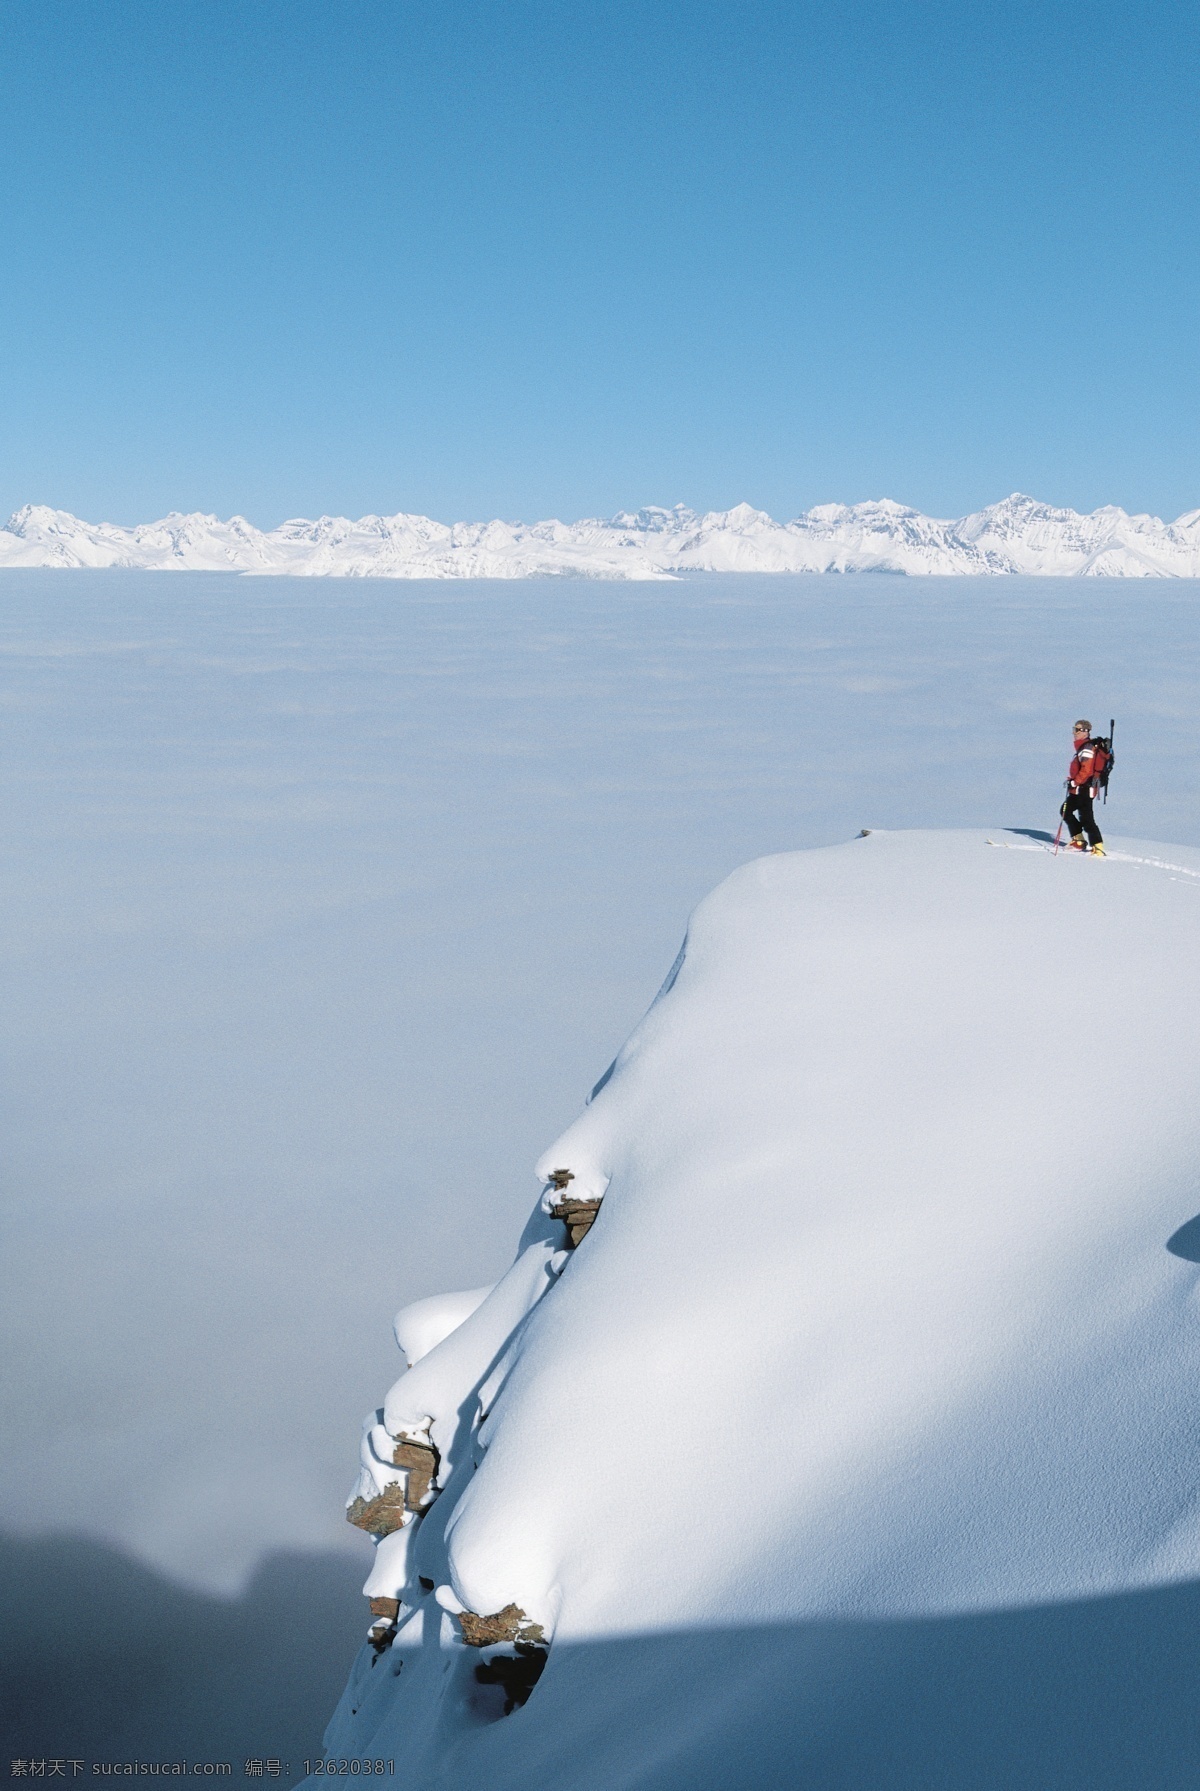 雪山 上 登山 运动员 高清 雪地运动 登山运动员 爬山 运动图片 生活百科 风景 摄影图片 高清图片 体育运动 蓝色